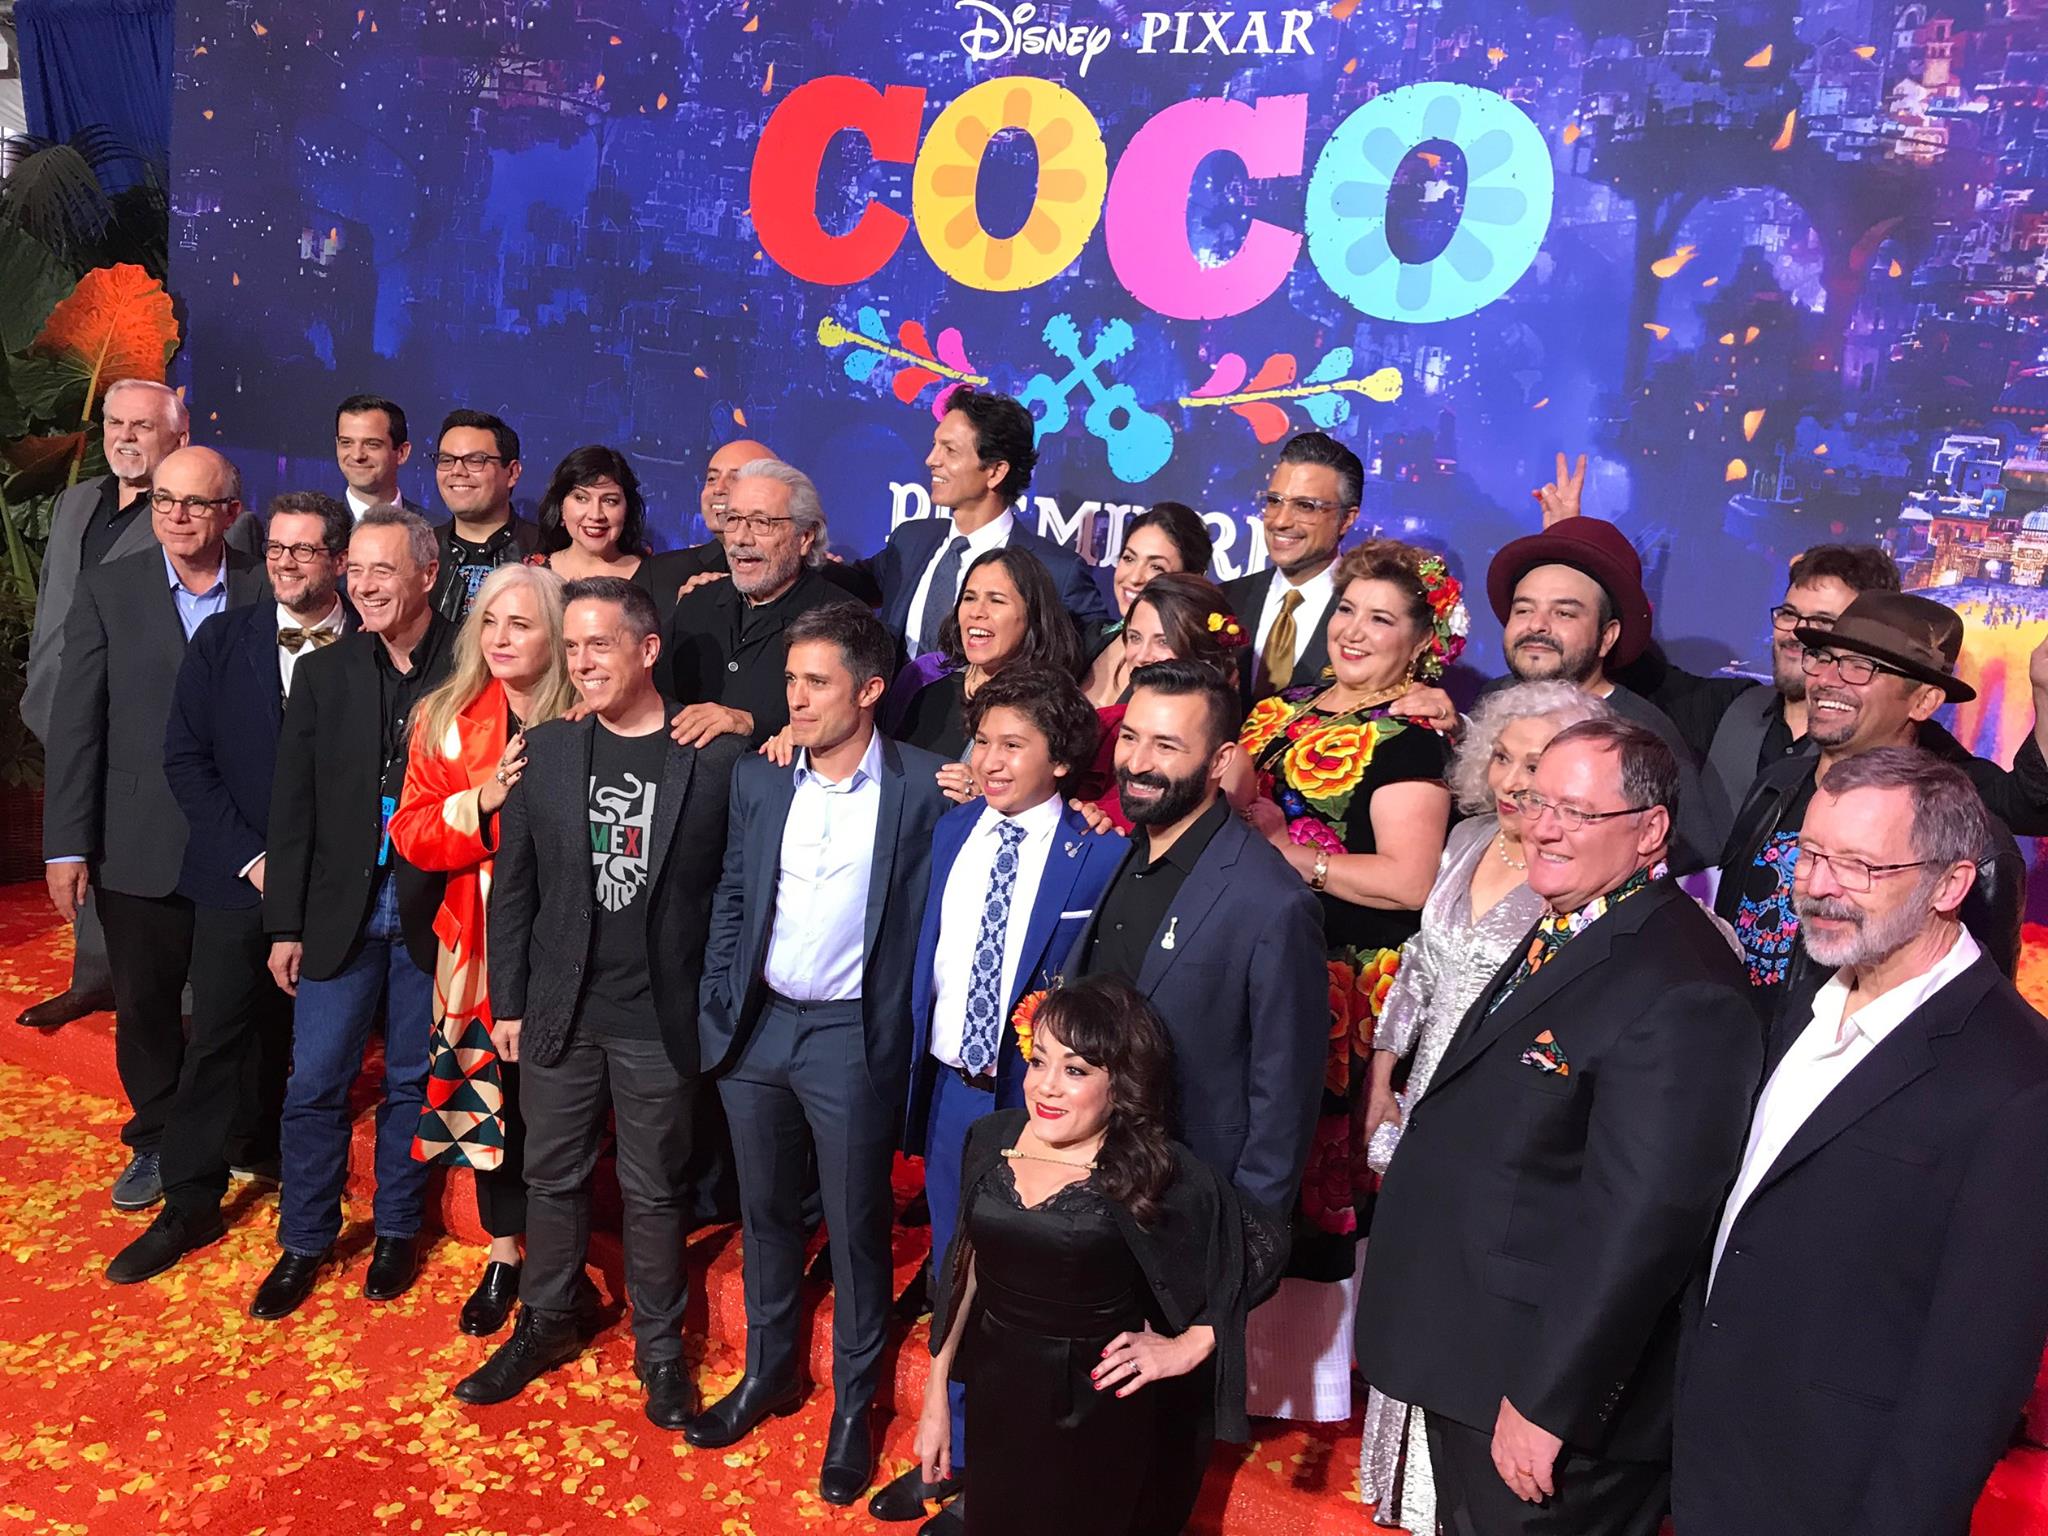 Premiere Of Disney Pixar’s “Coco”